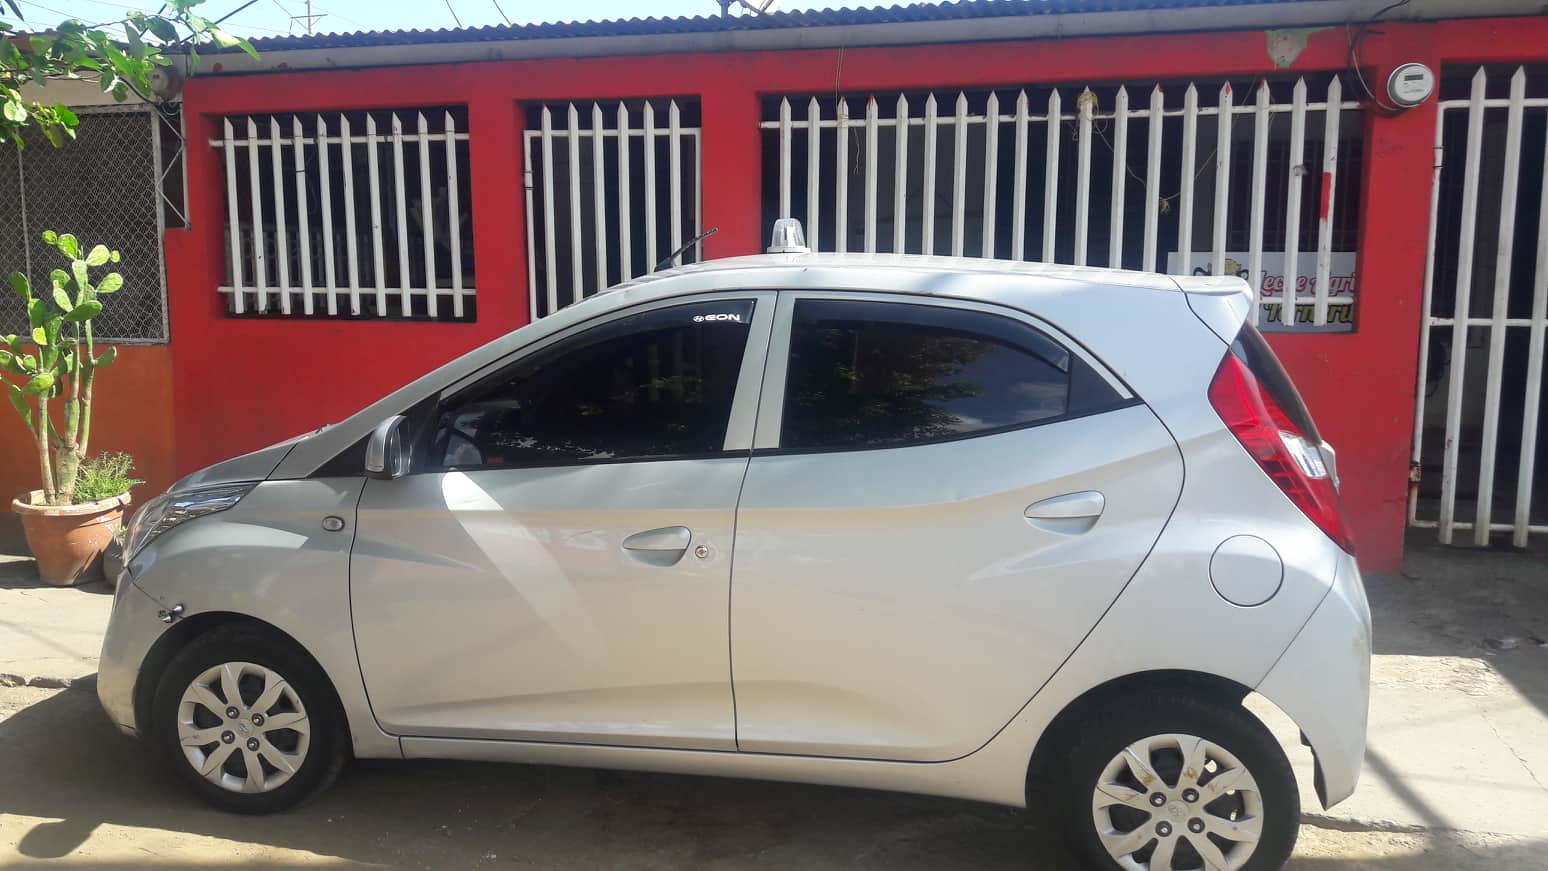 Servicio privado de Taxi WhatsApp en Managua